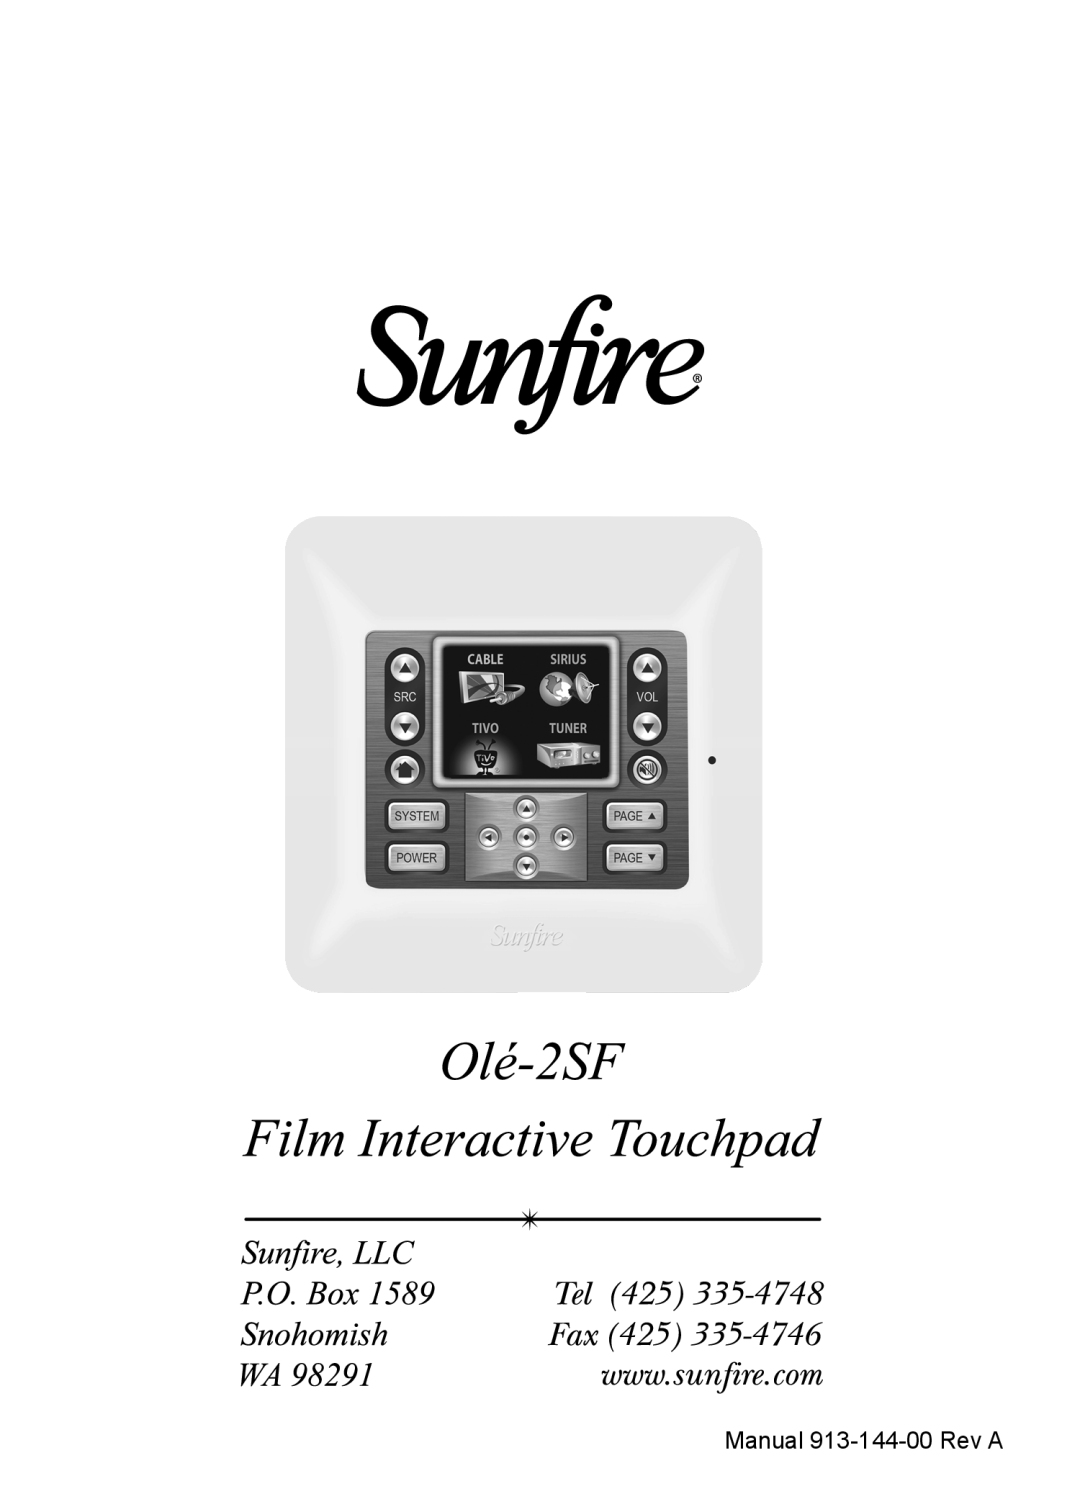 Sunfire OLE-2SF manual Manual 913-144-00Rev A 